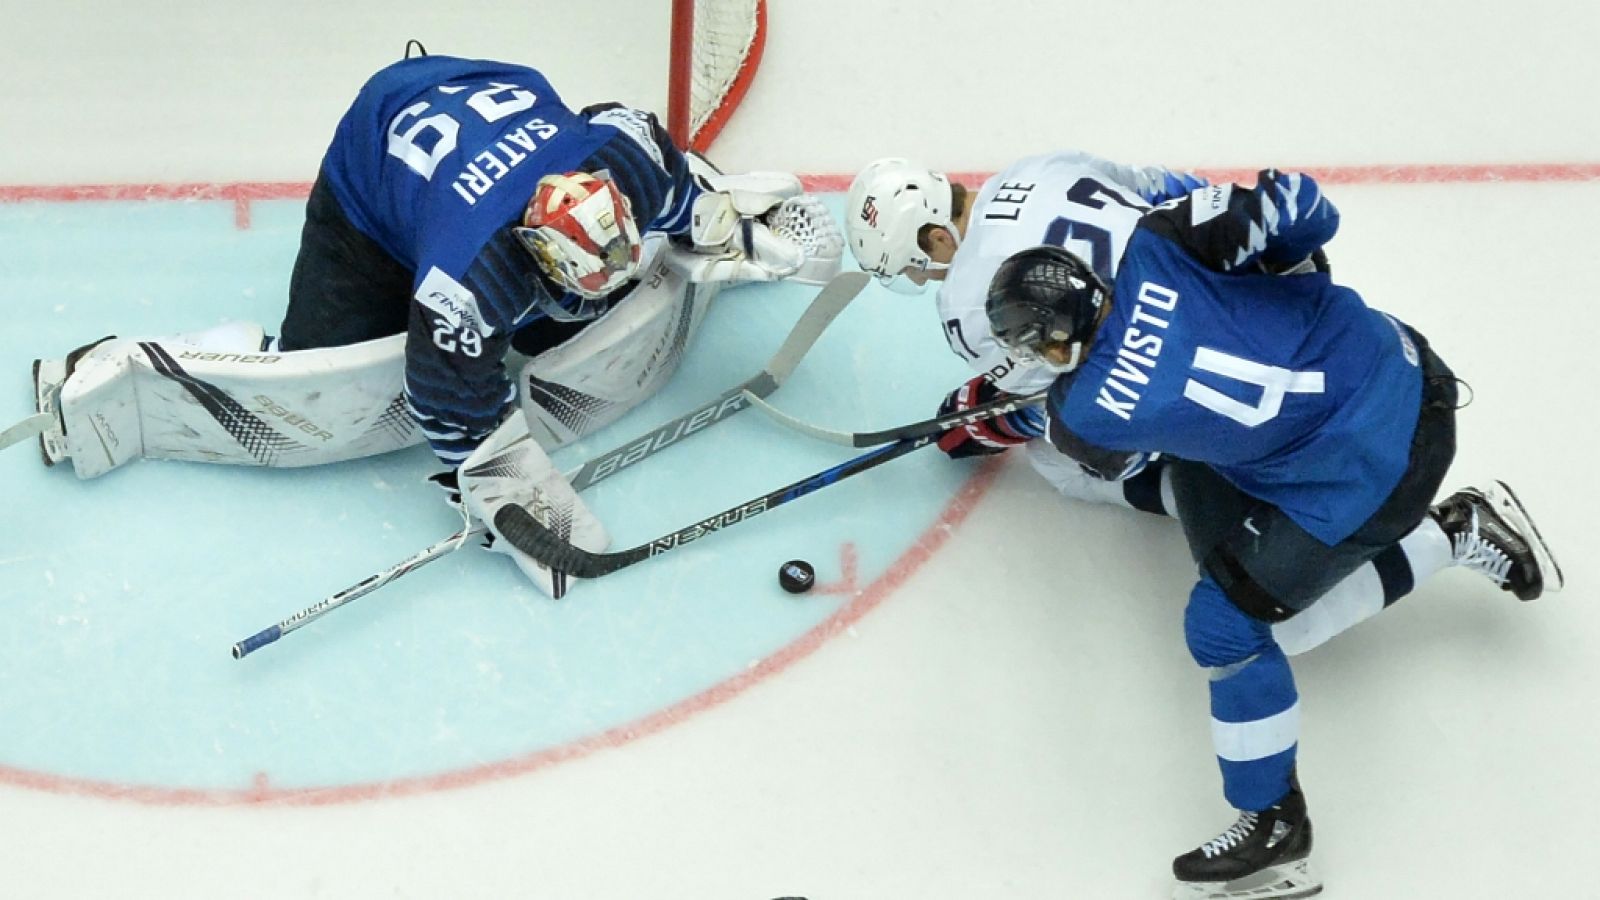 Hockey hielo - Campeonato del mundo: Finlandia - EE.UU.